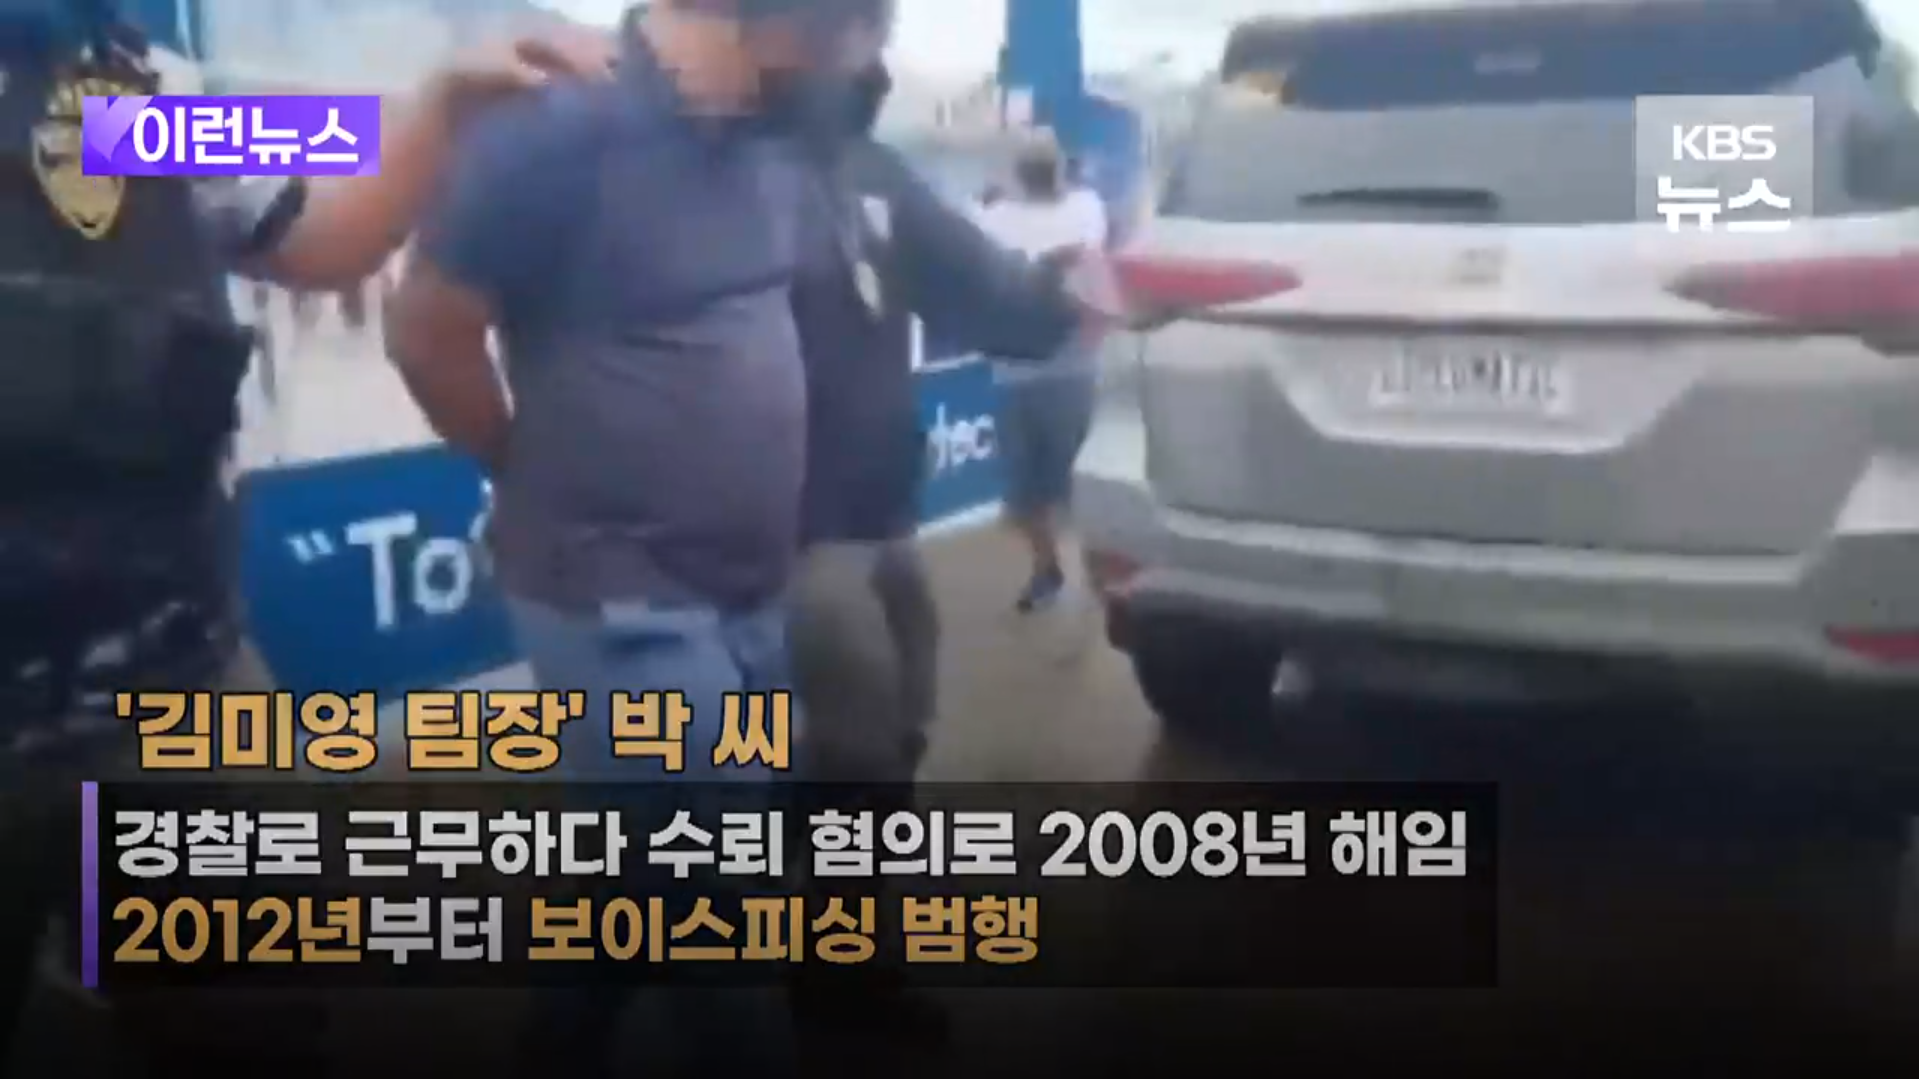 보이스피싱의 상징 김미영 팀장 필리핀 탈옥사건 (출처 - KBS 뉴스 스크린샷)